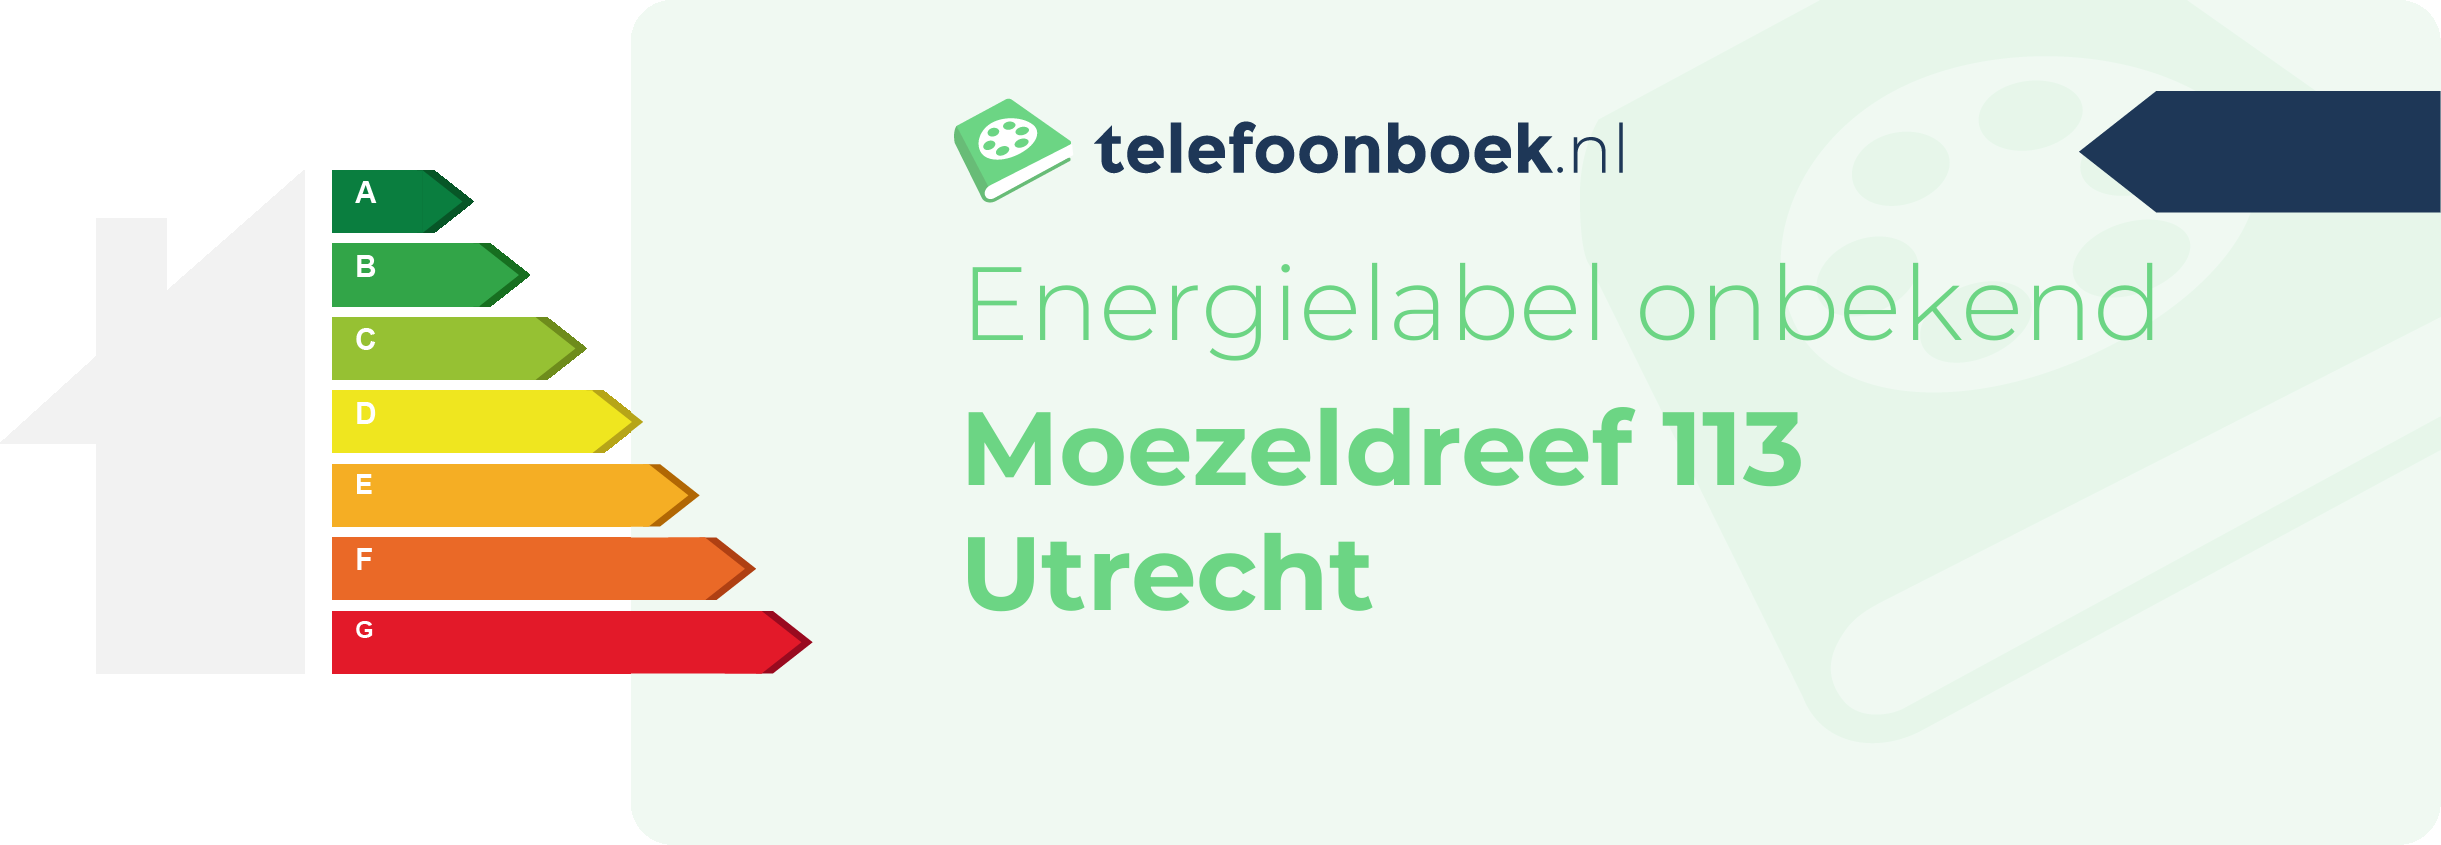 Energielabel Moezeldreef 113 Utrecht